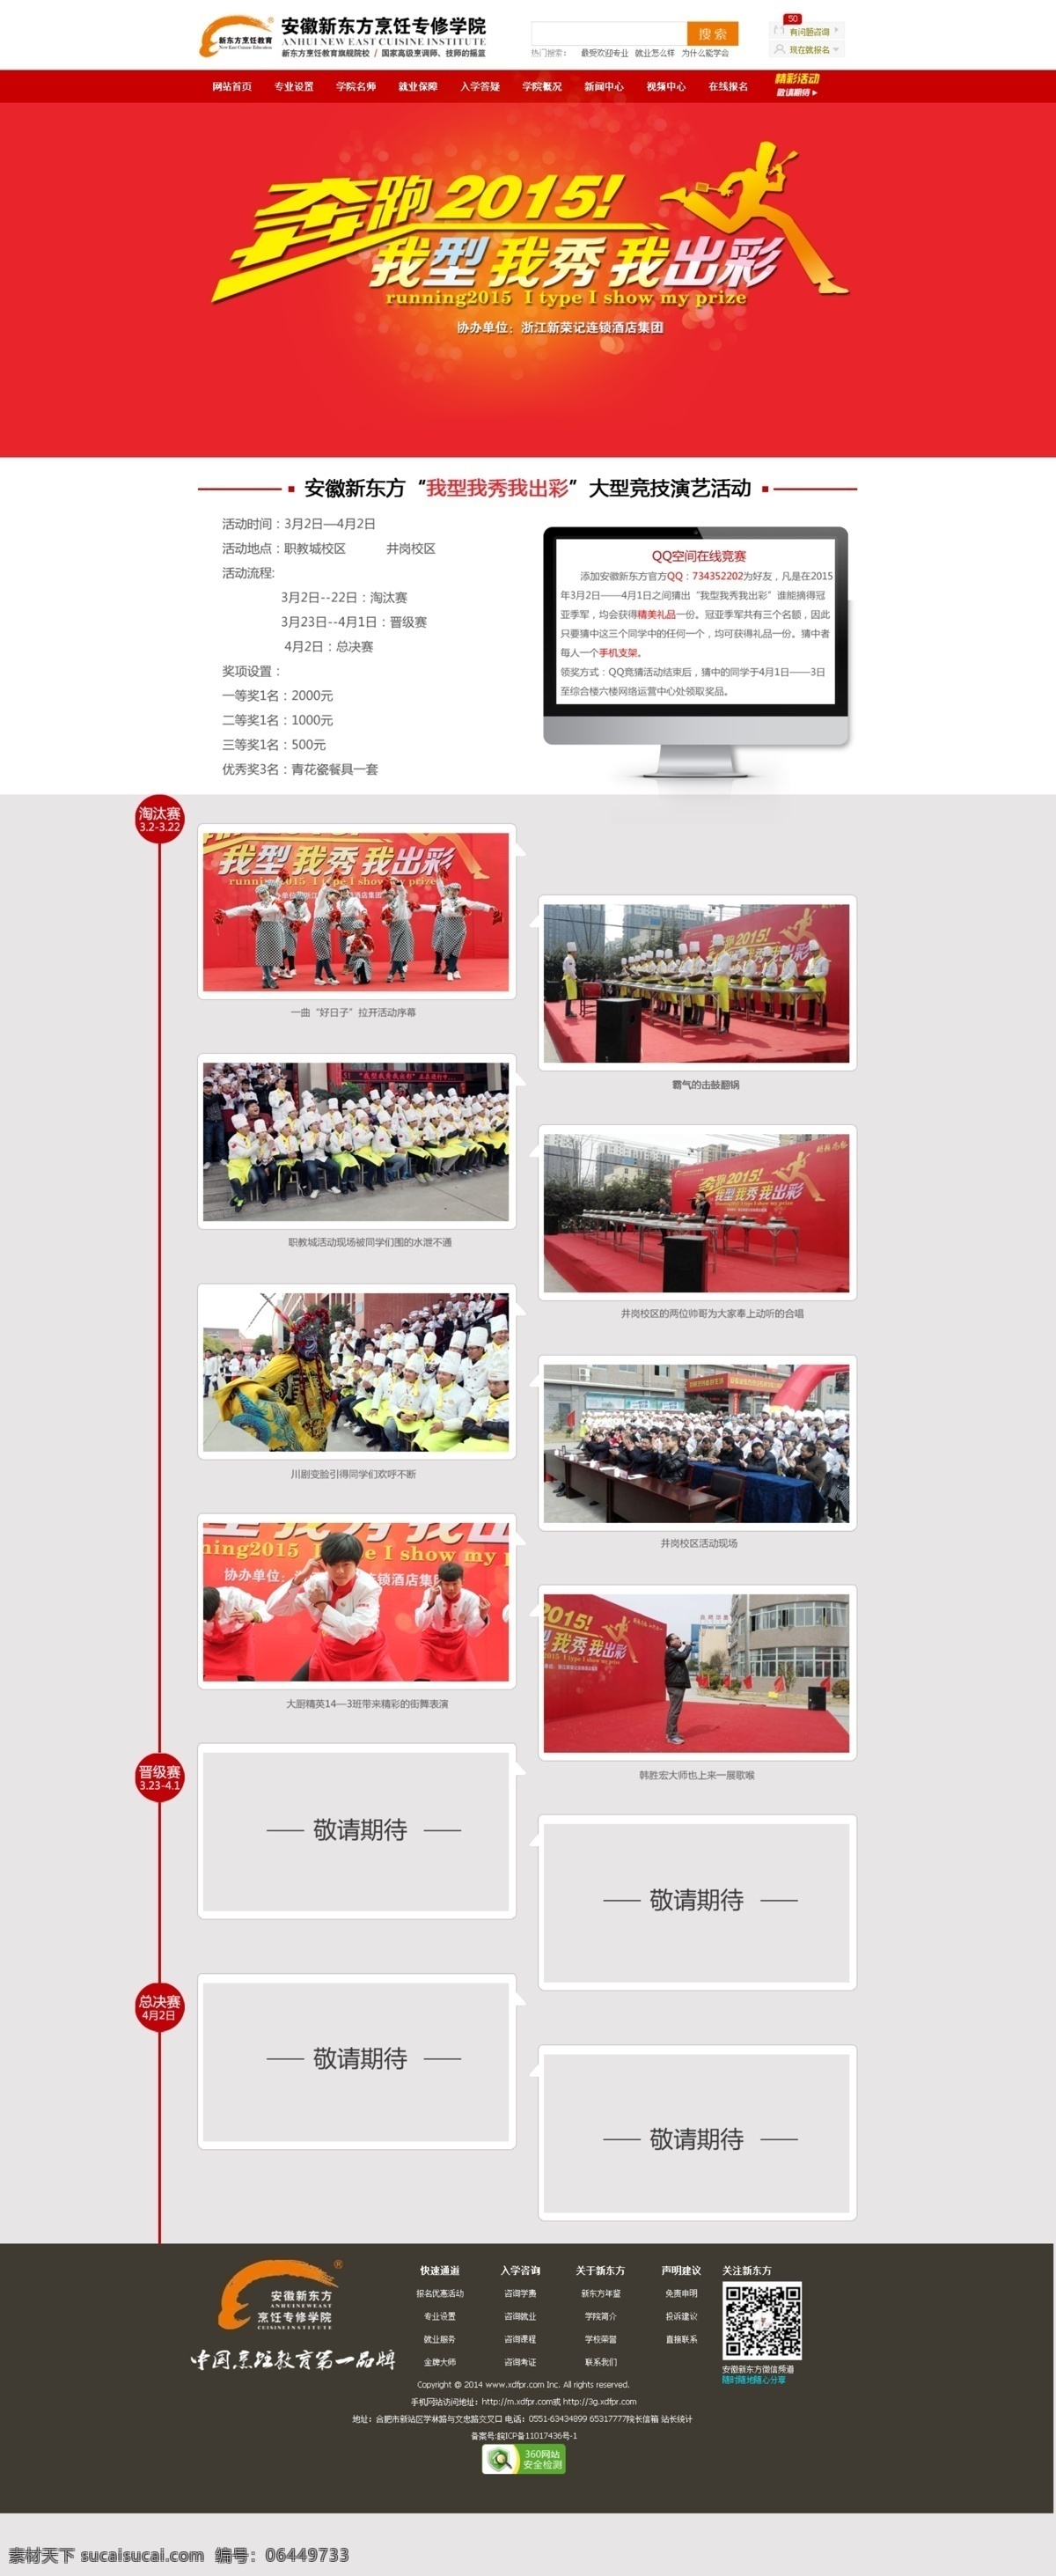 奔跑 2015 专题 页 其他模板 网页模板 源文件 中文模板 字体设计 奔跑的厨师 专题页设计 原创设计 原创网页设计